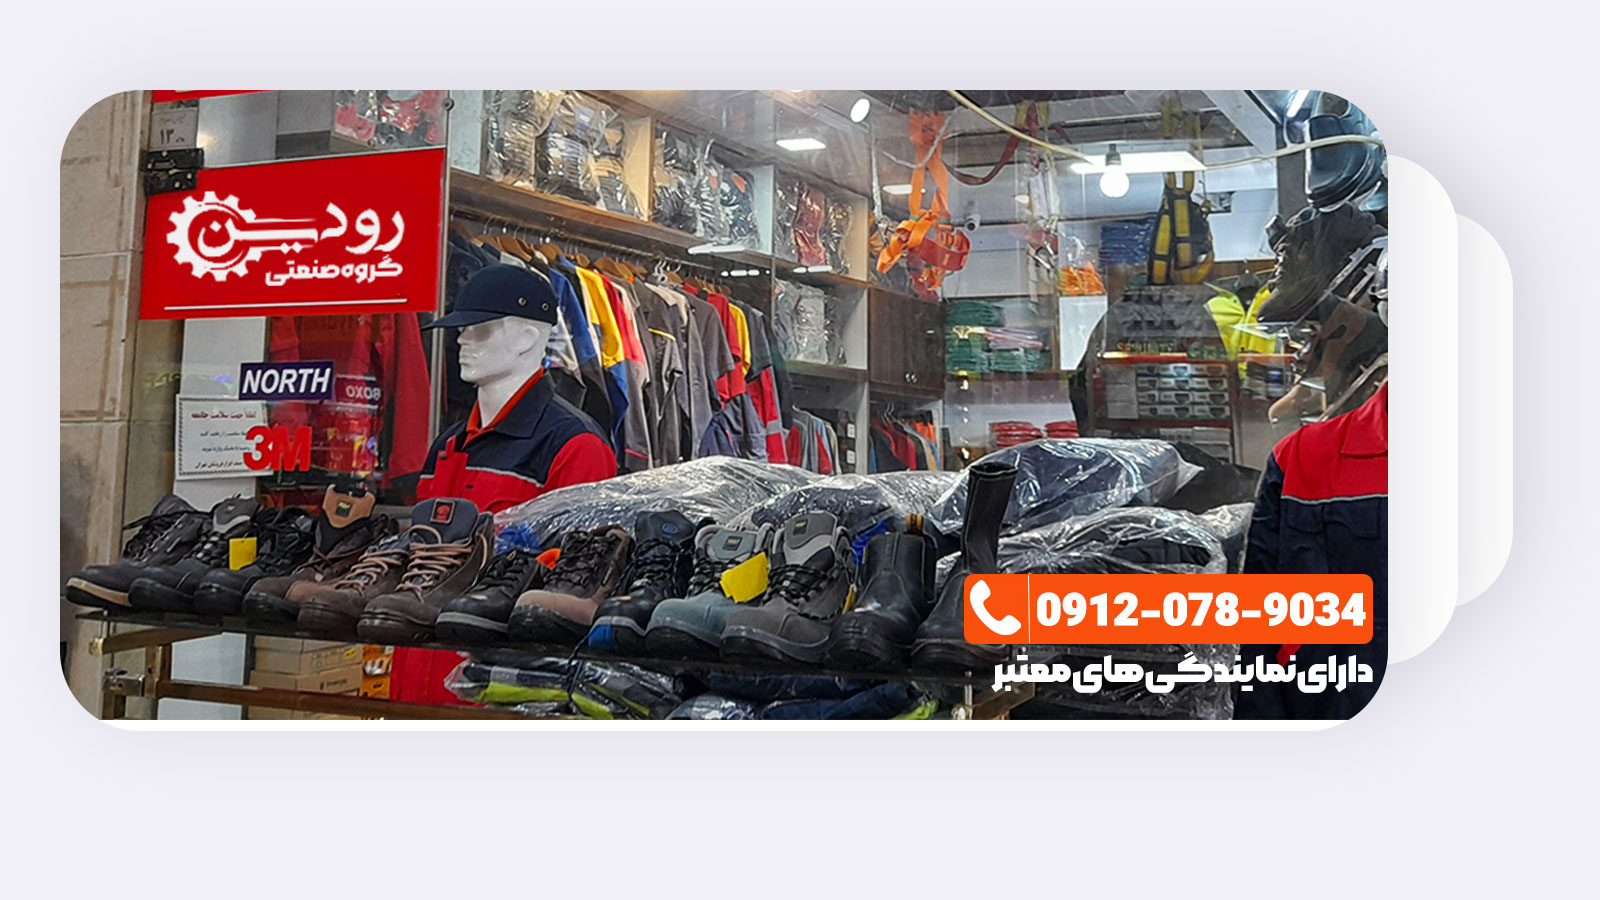 بازار خرید کفش ایمنی تهران و انواع پوتین های ایمنی داغ است.